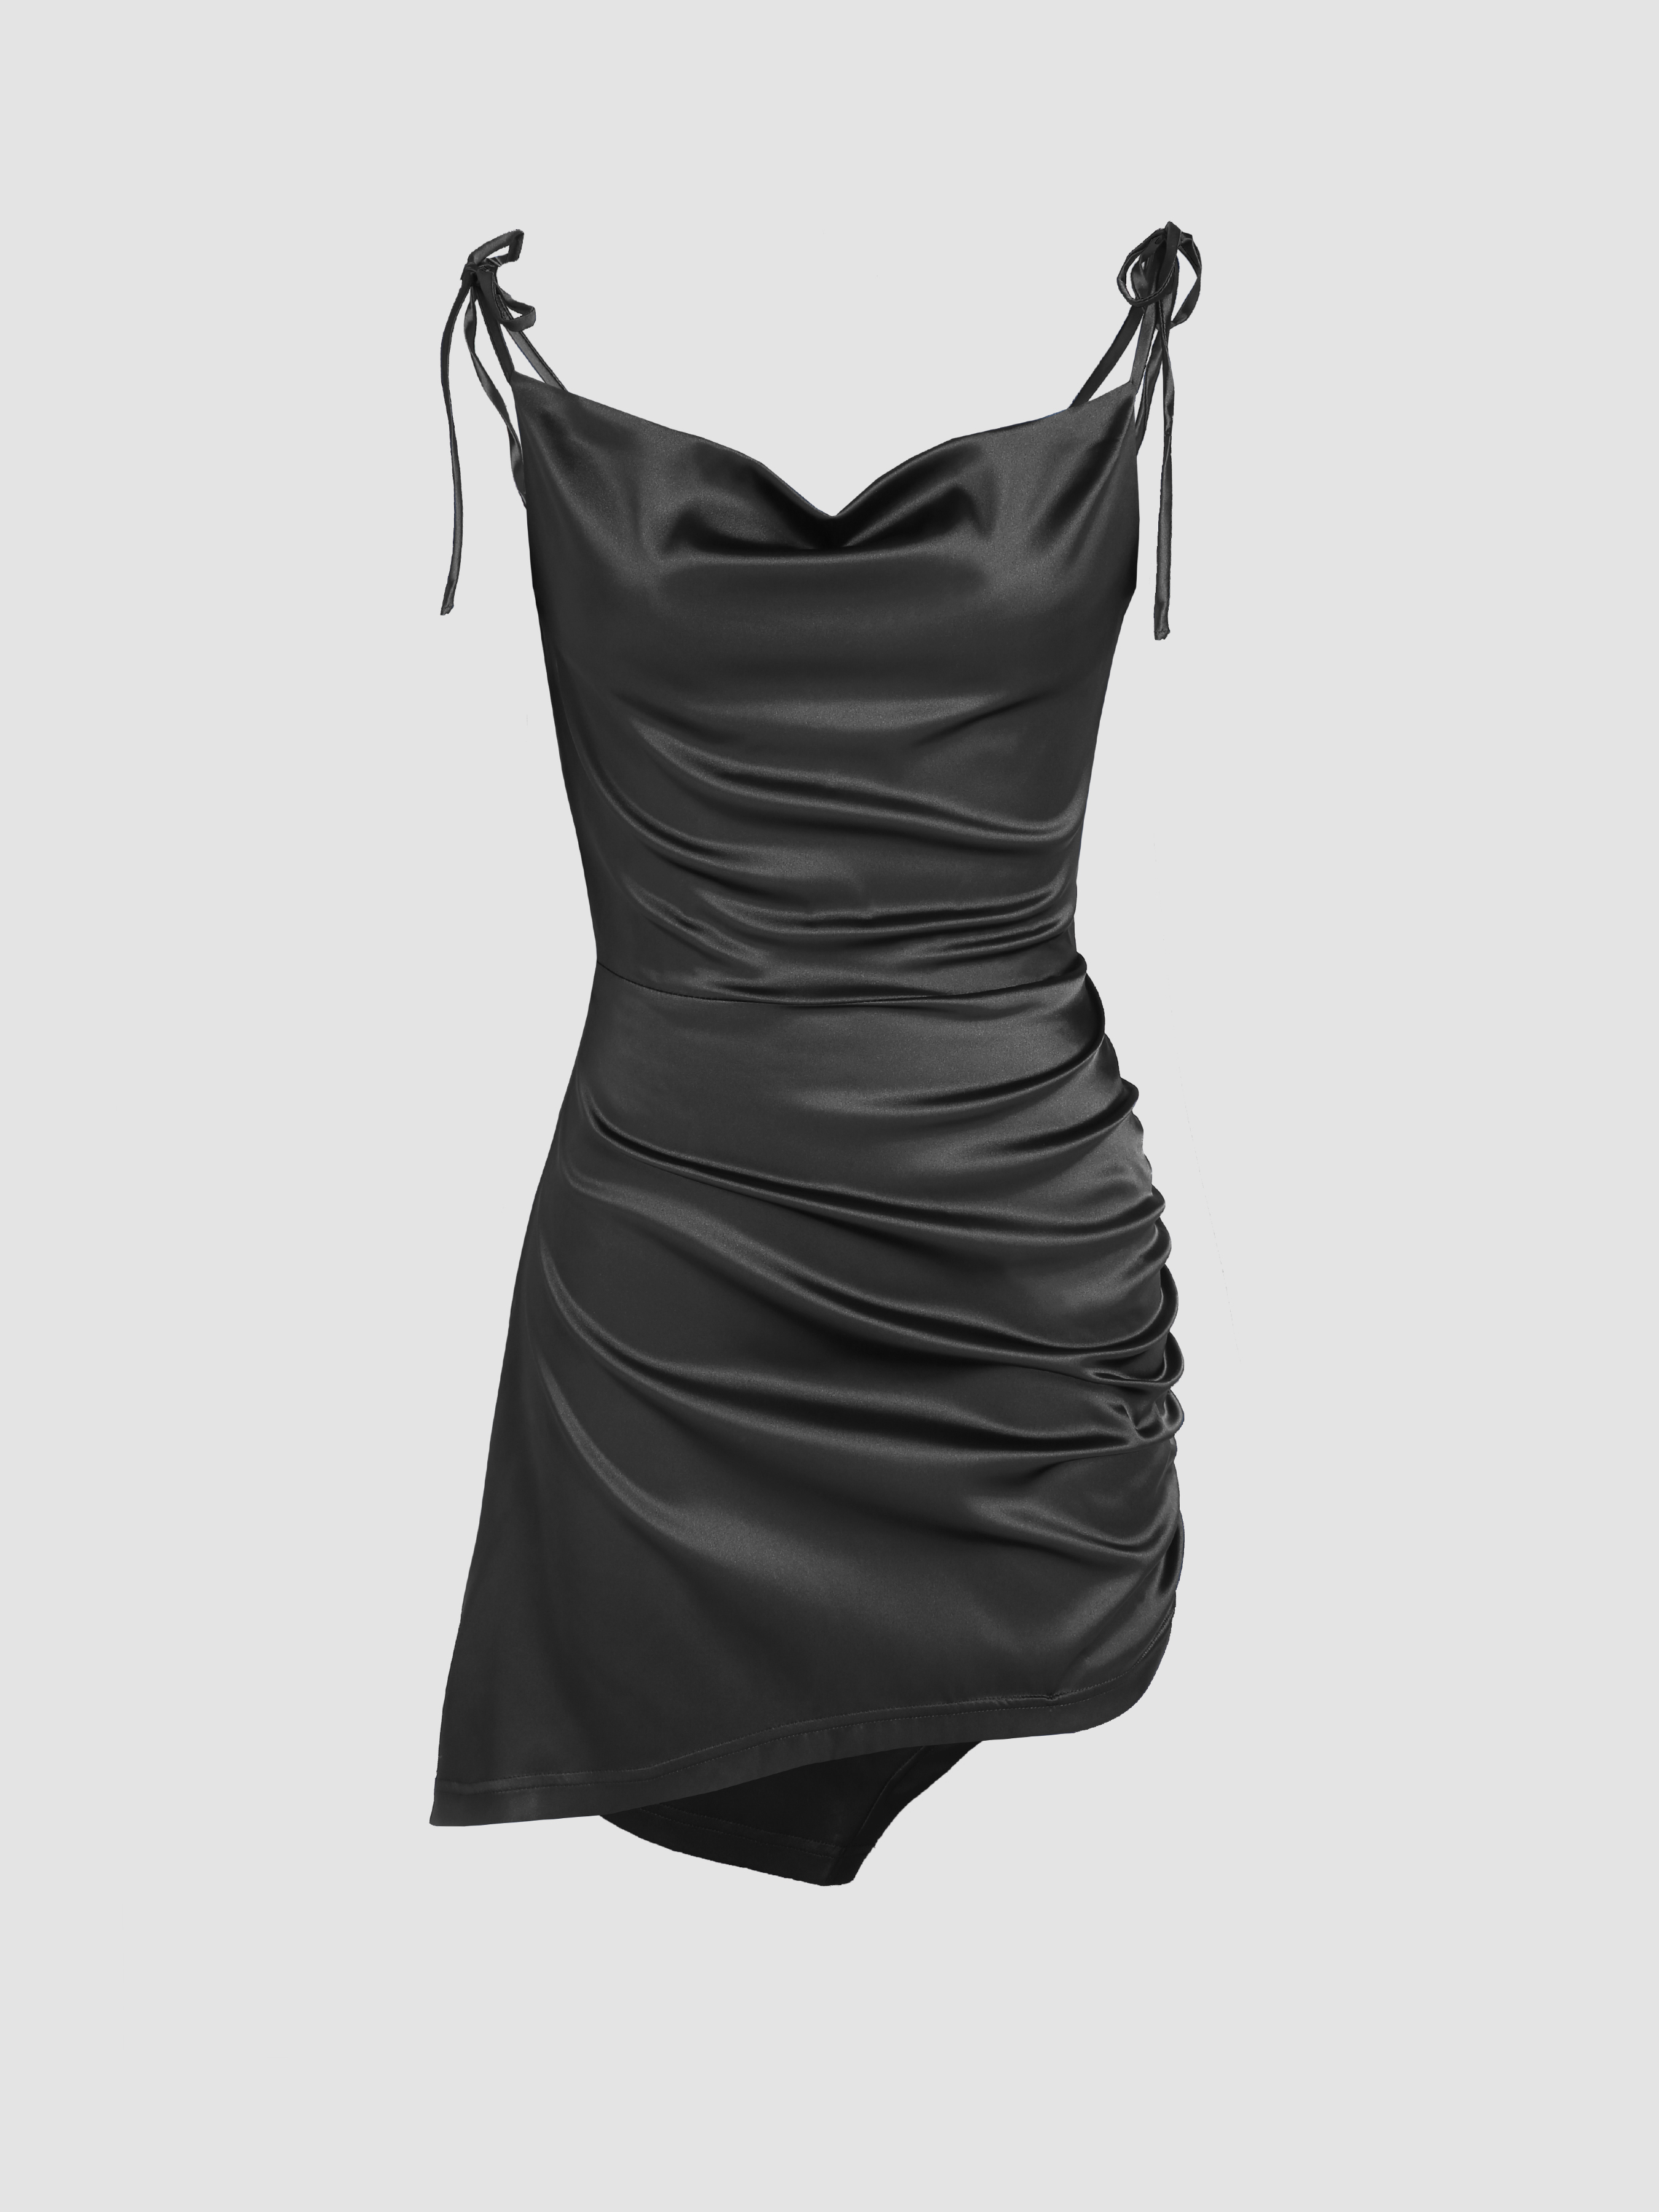 Black Satin Dress, Black Mini Dress, Black Dress Flowy, Mini